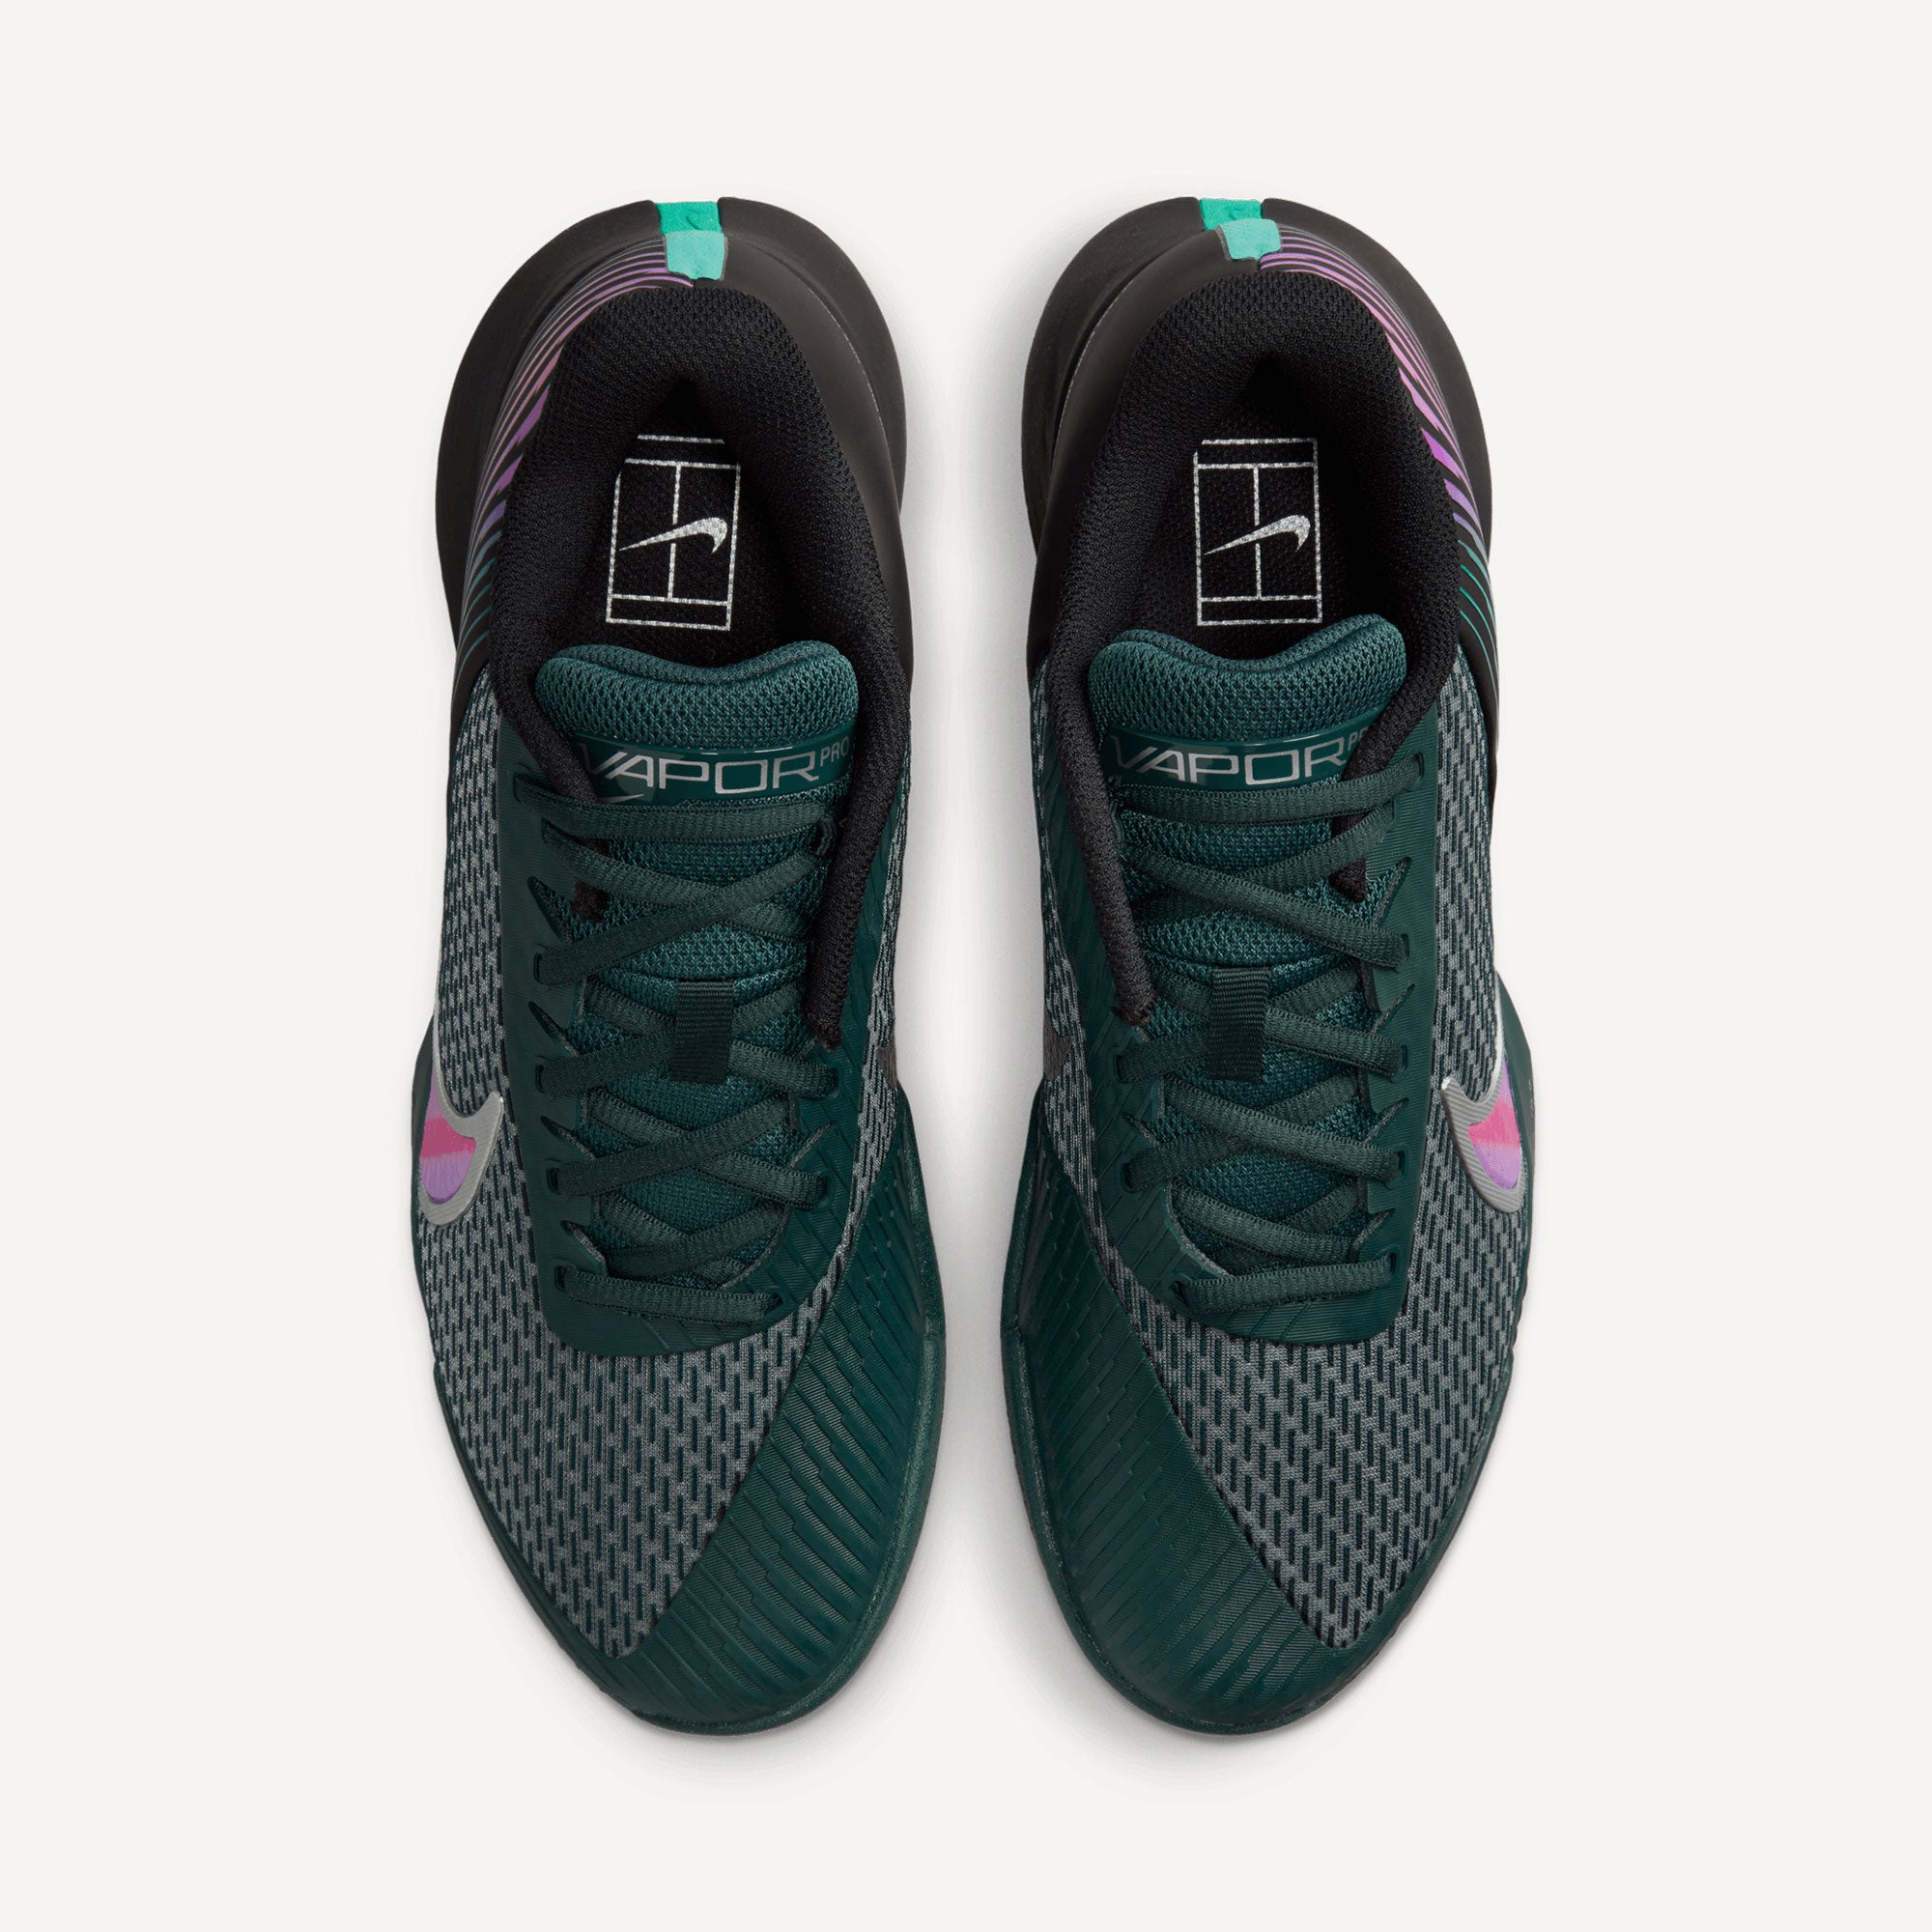 NikeCourt Air Zoom Vapor Pro 2 Premium Men's Hard Court Tennis Shoes Black (6)